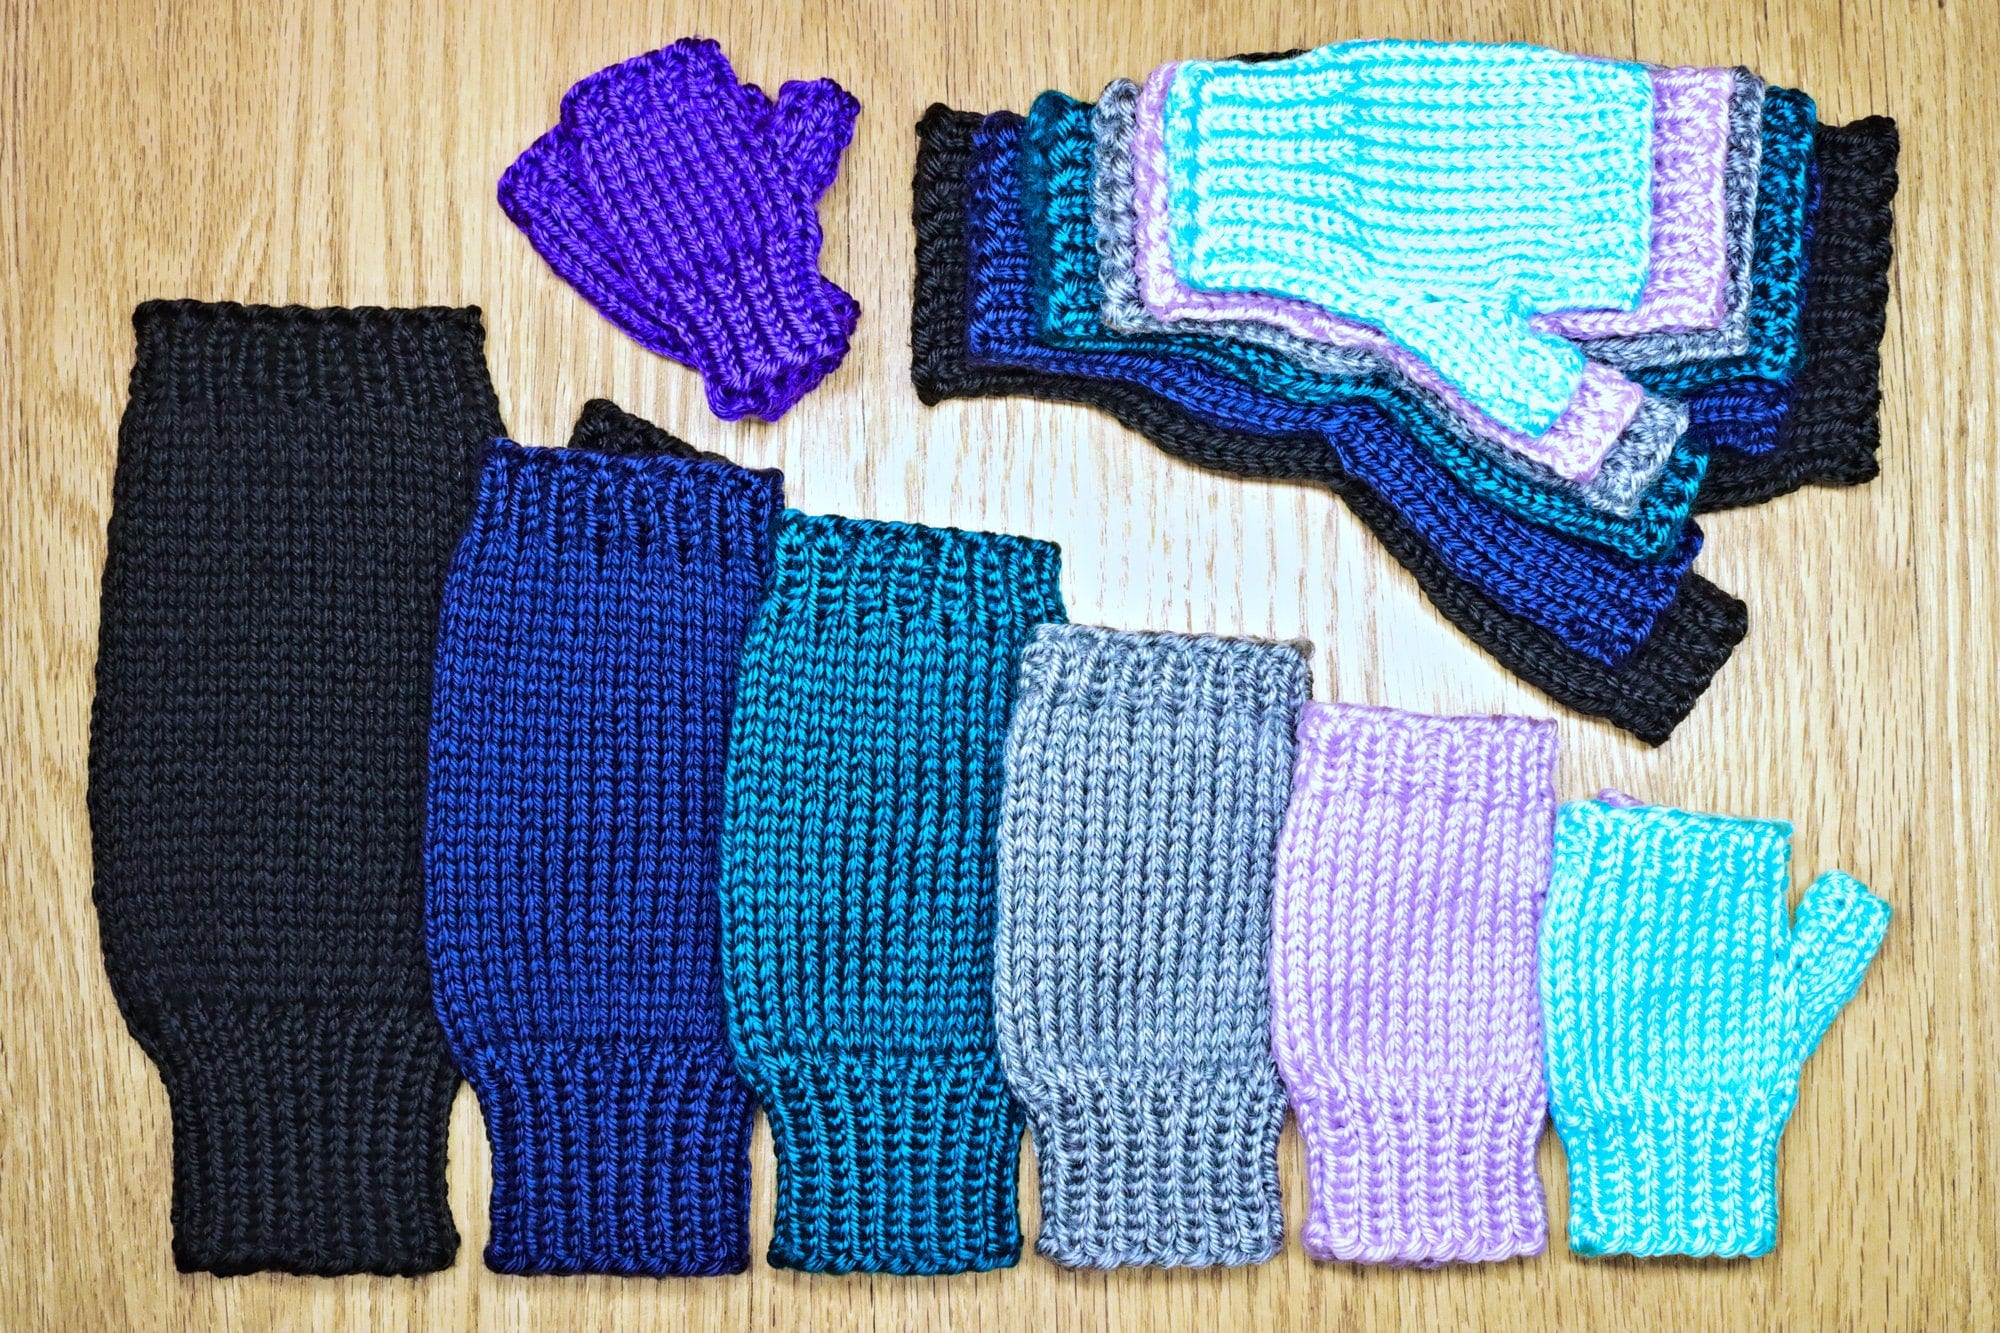 Craftabelle – Finger Knit Creation Kit – Beginner Knitting Kit